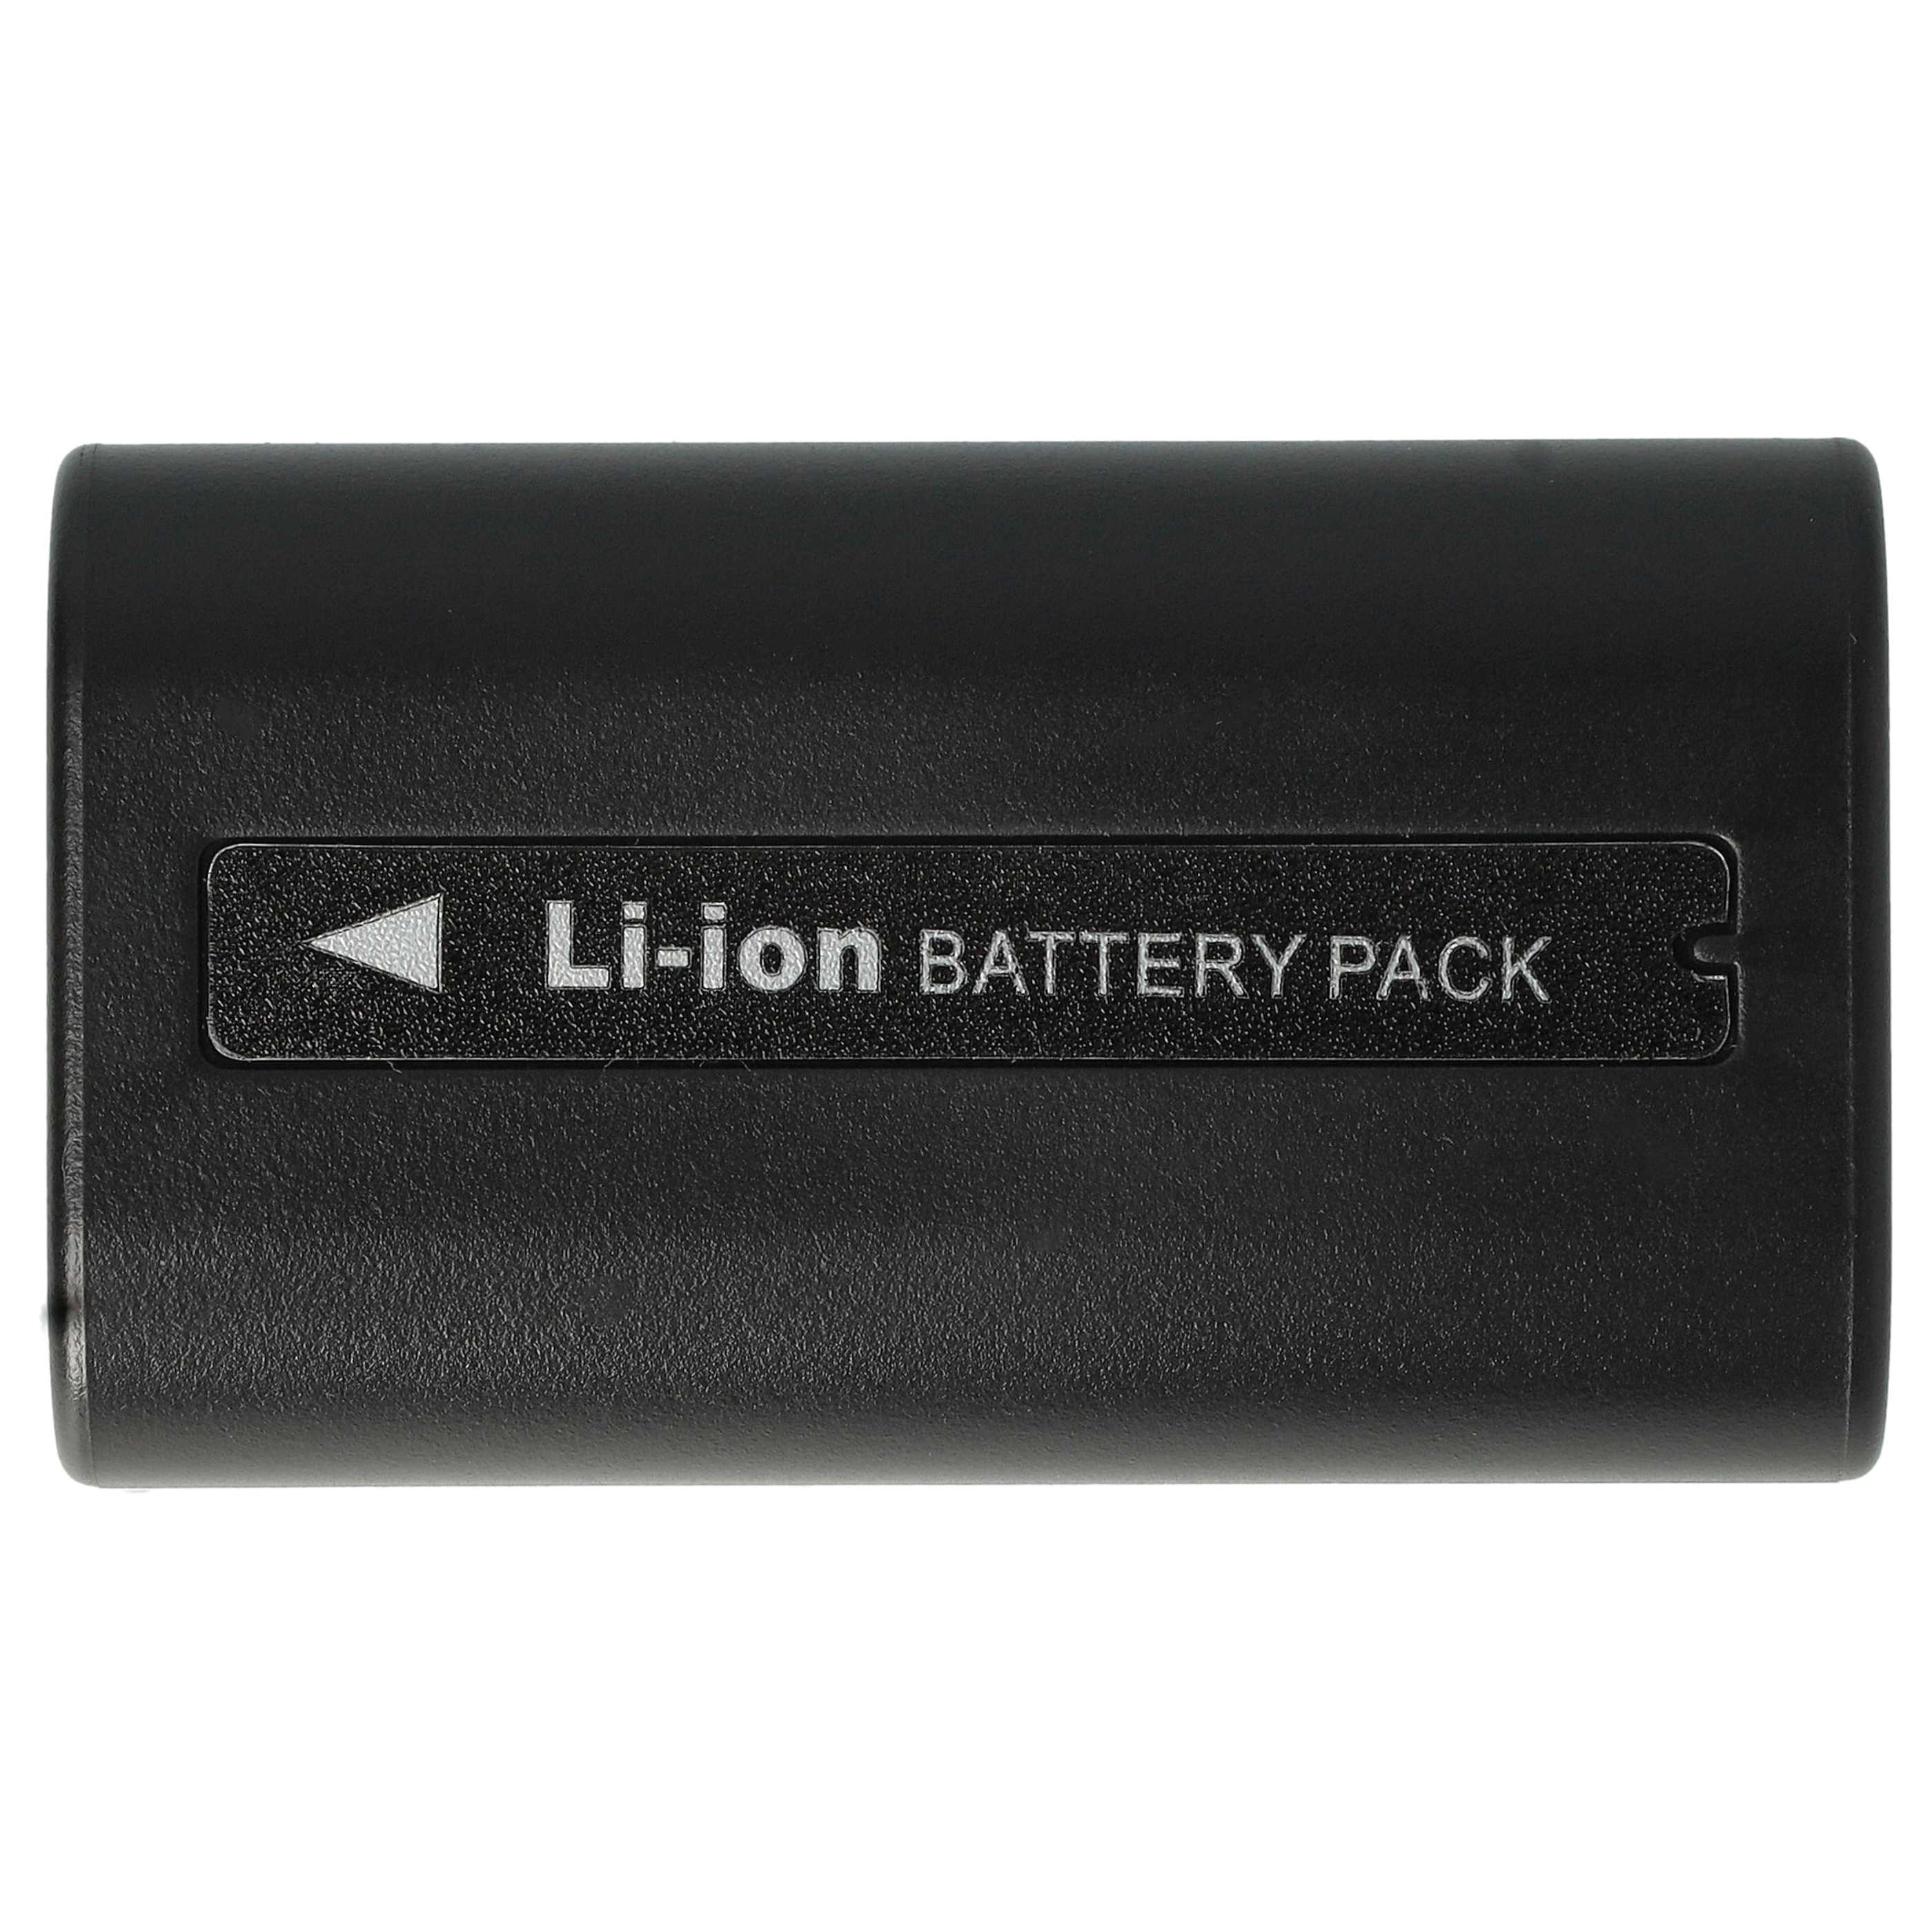 Batería reemplaza Samsung SB-LSM80, SB-LSM320, SB-LSM160 para videocámara - 1200 mAh, 7,2 V